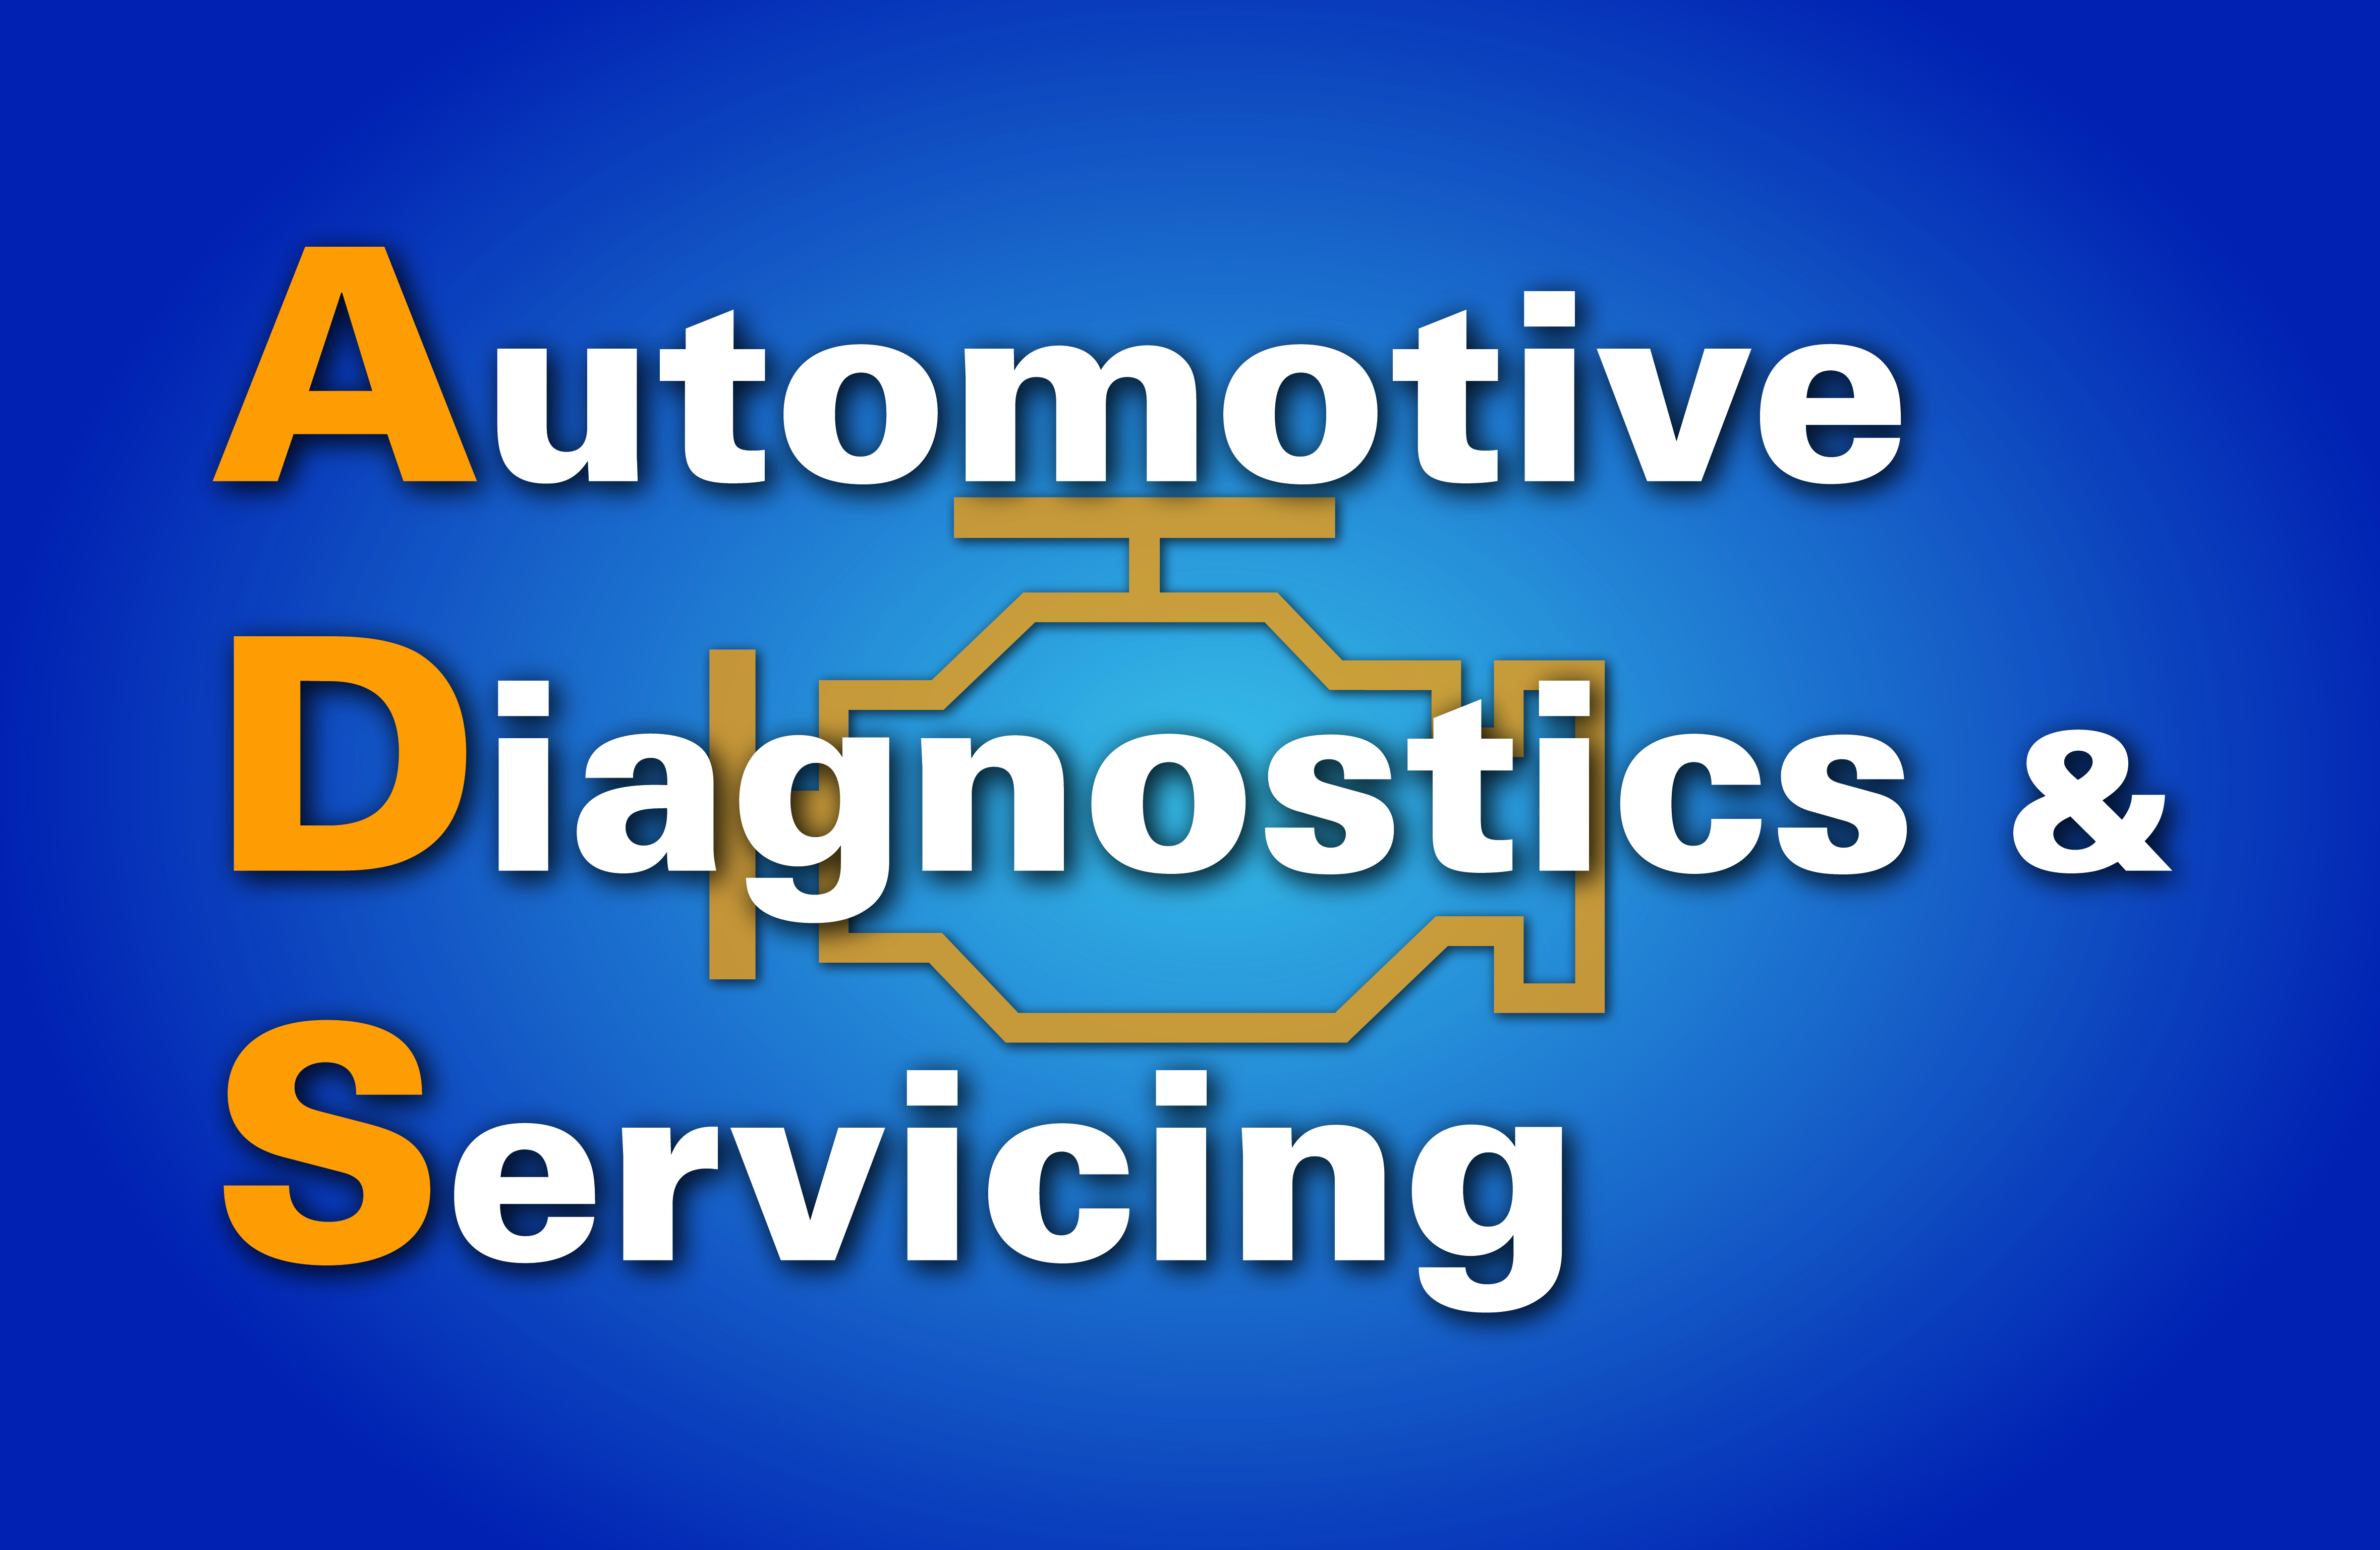 Automotive Diagnostics & Servicing